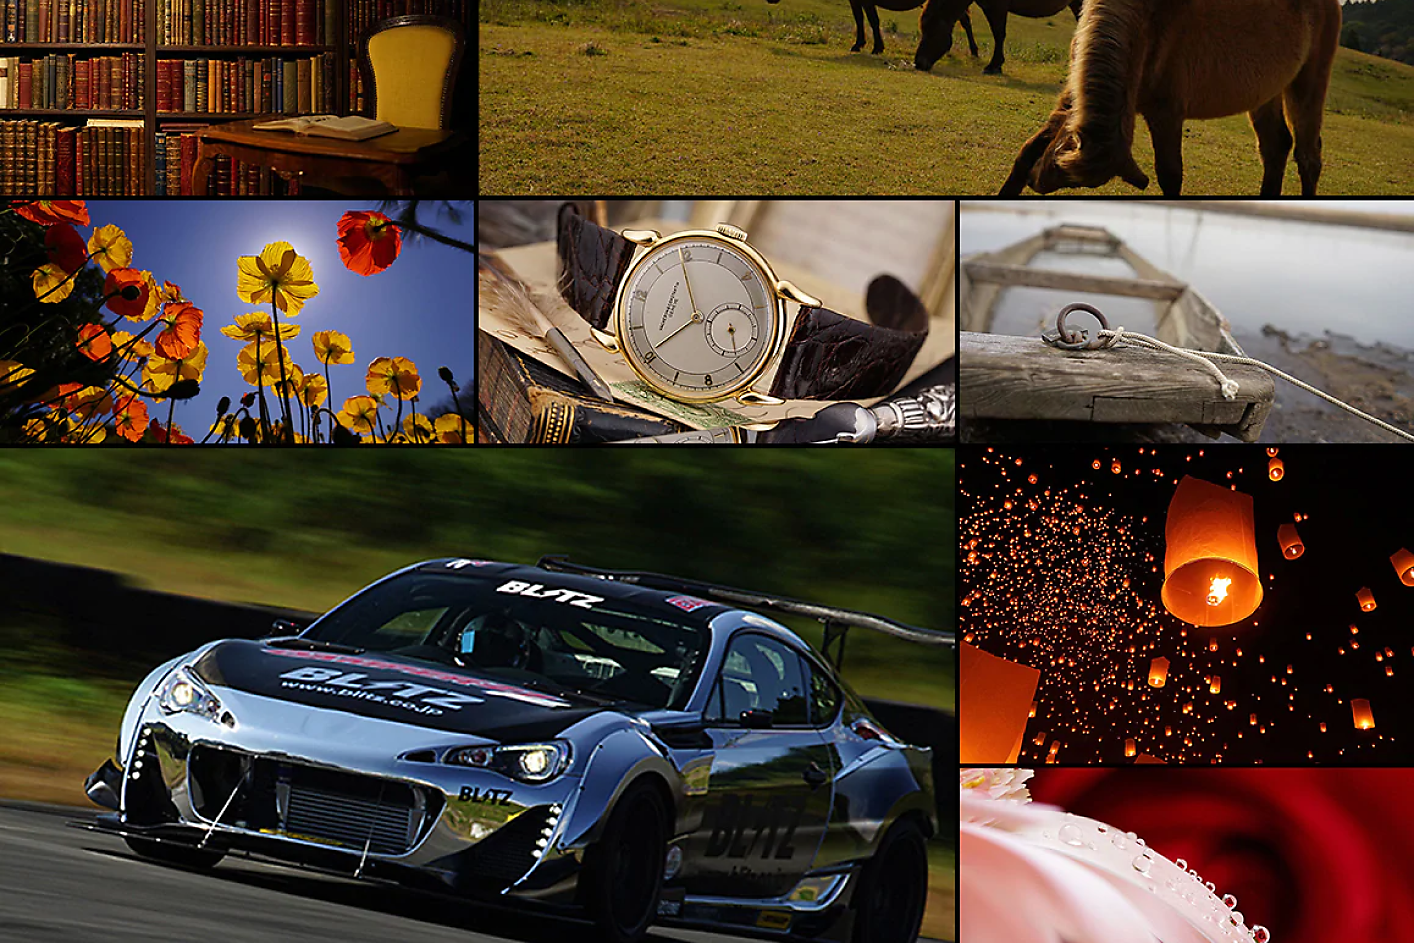 Kleurrijke collage van acht afbeeldingen, waaronder een raceauto, een paard, een horloge en bloemen